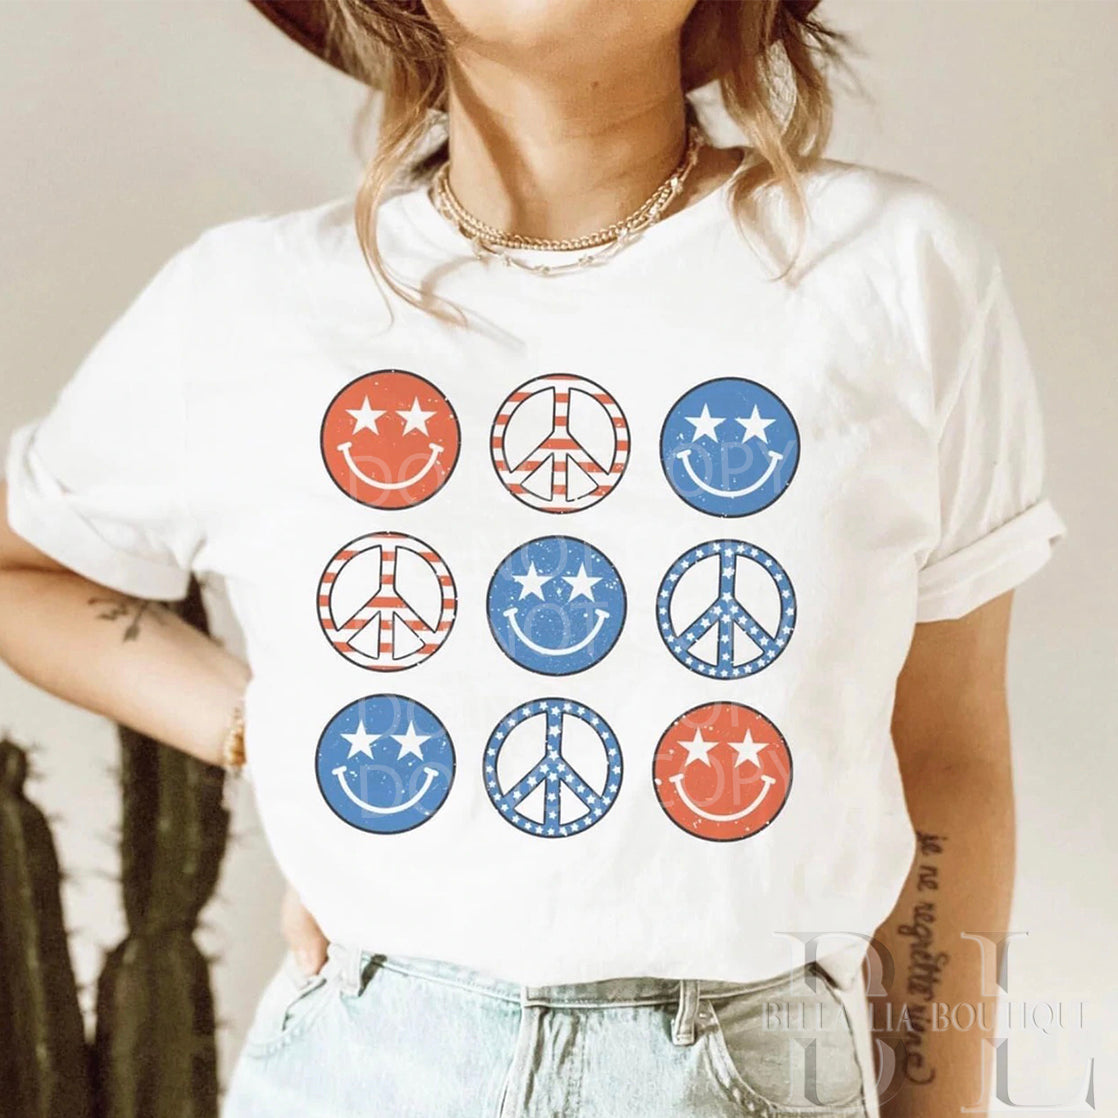 Patriotic Peace Graphic Tee or Sweatshirt - Bella Lia Boutique